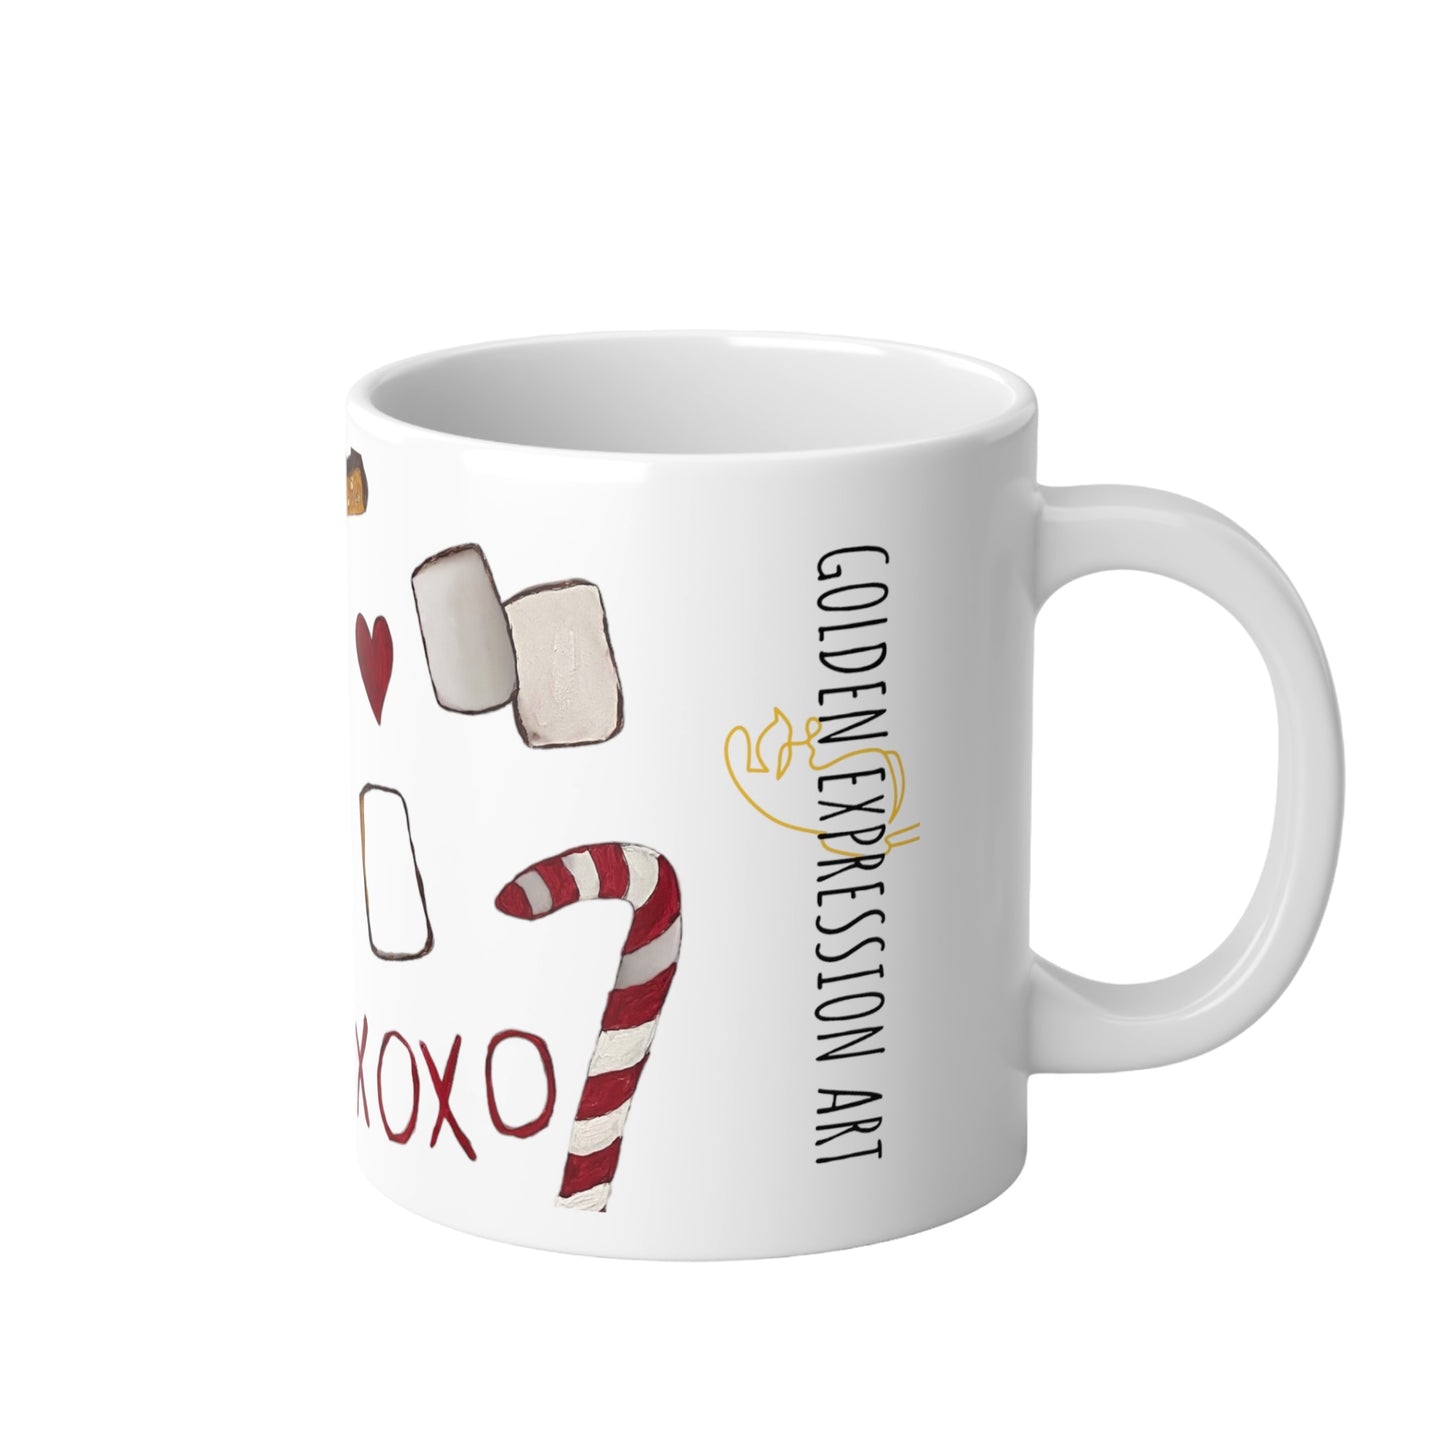 Jumbo Tea/Coffee Mug